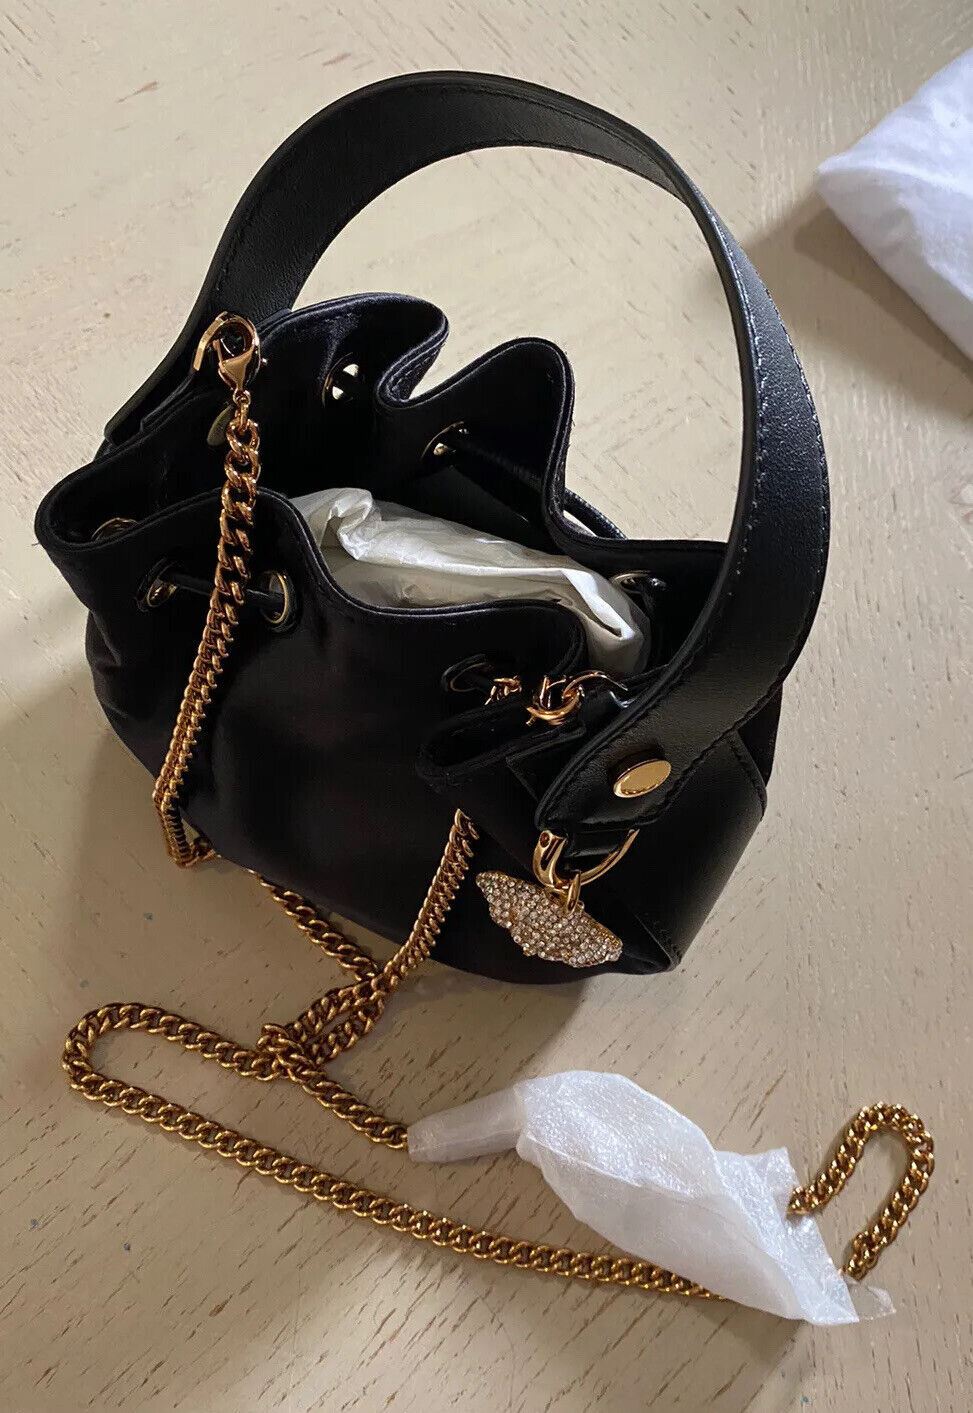 Neu $ 1275 Versace Damen Abendtasche mit Medusa-Charm, Satin-Hobo-Tasche, Schwarz, Italien